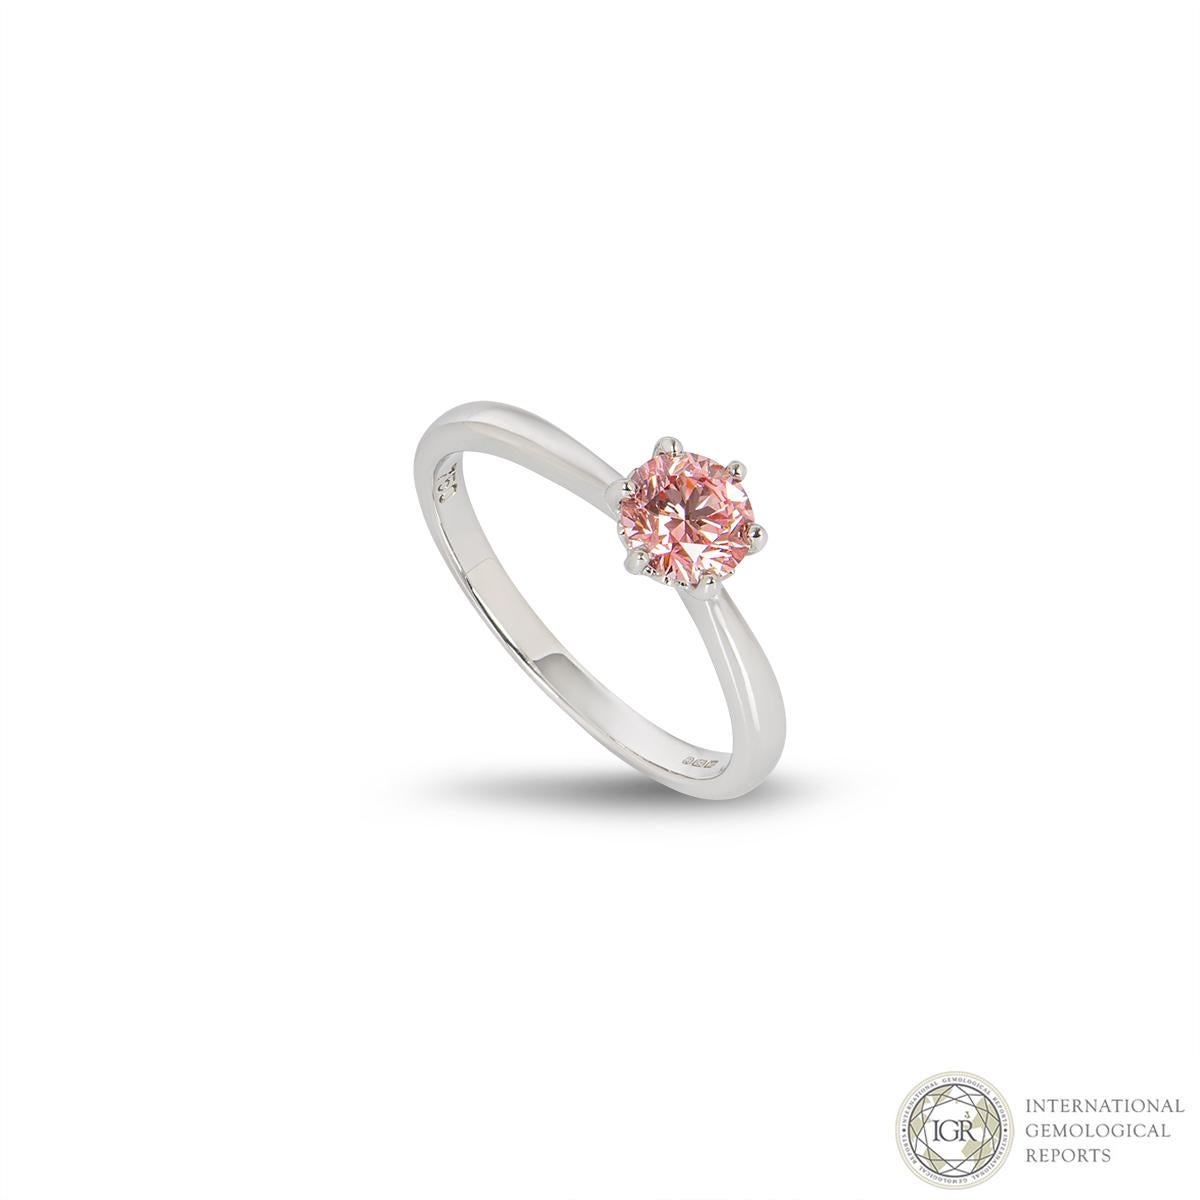 Ein besonders intensiver, farbverstärkter rosa Diamantring. Der 0,66-karätige, intensiv rosafarbene Diamant ist in einer klassischen Sechs-Krallen-Fassung aus 18 Karat Weißgold gefasst. Der natürliche Diamant wurde farblich verbessert, um das